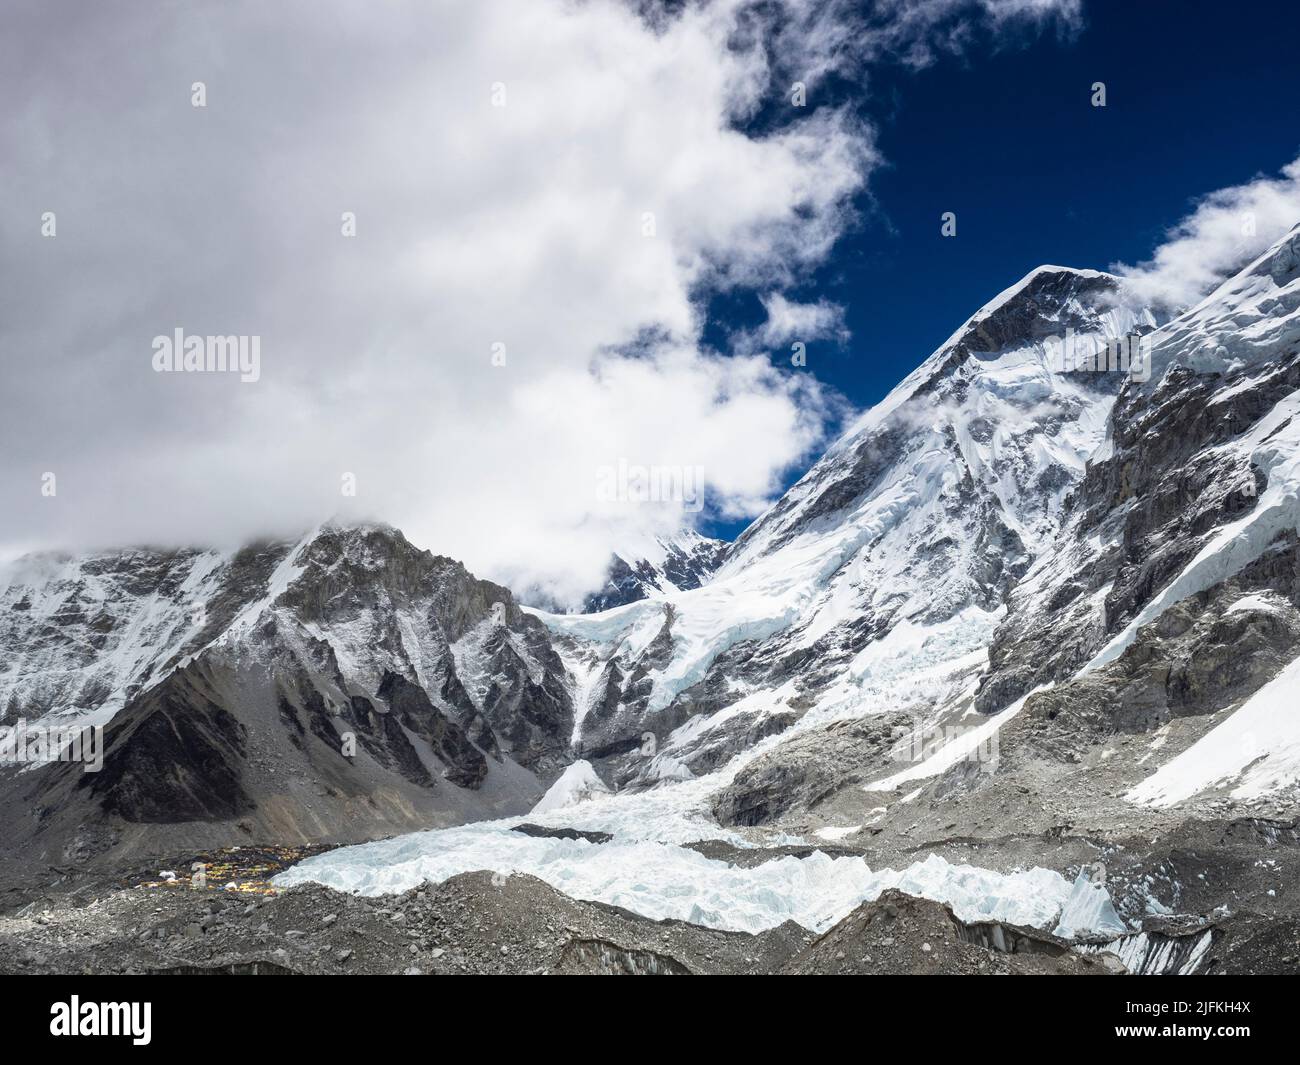 Everest-Basislager in der Ferne am linken Rand des Khumbu-Eisbruchs. Khumbutse (6636m) (l), und die Westschulter sind sichtbar, Stockfoto